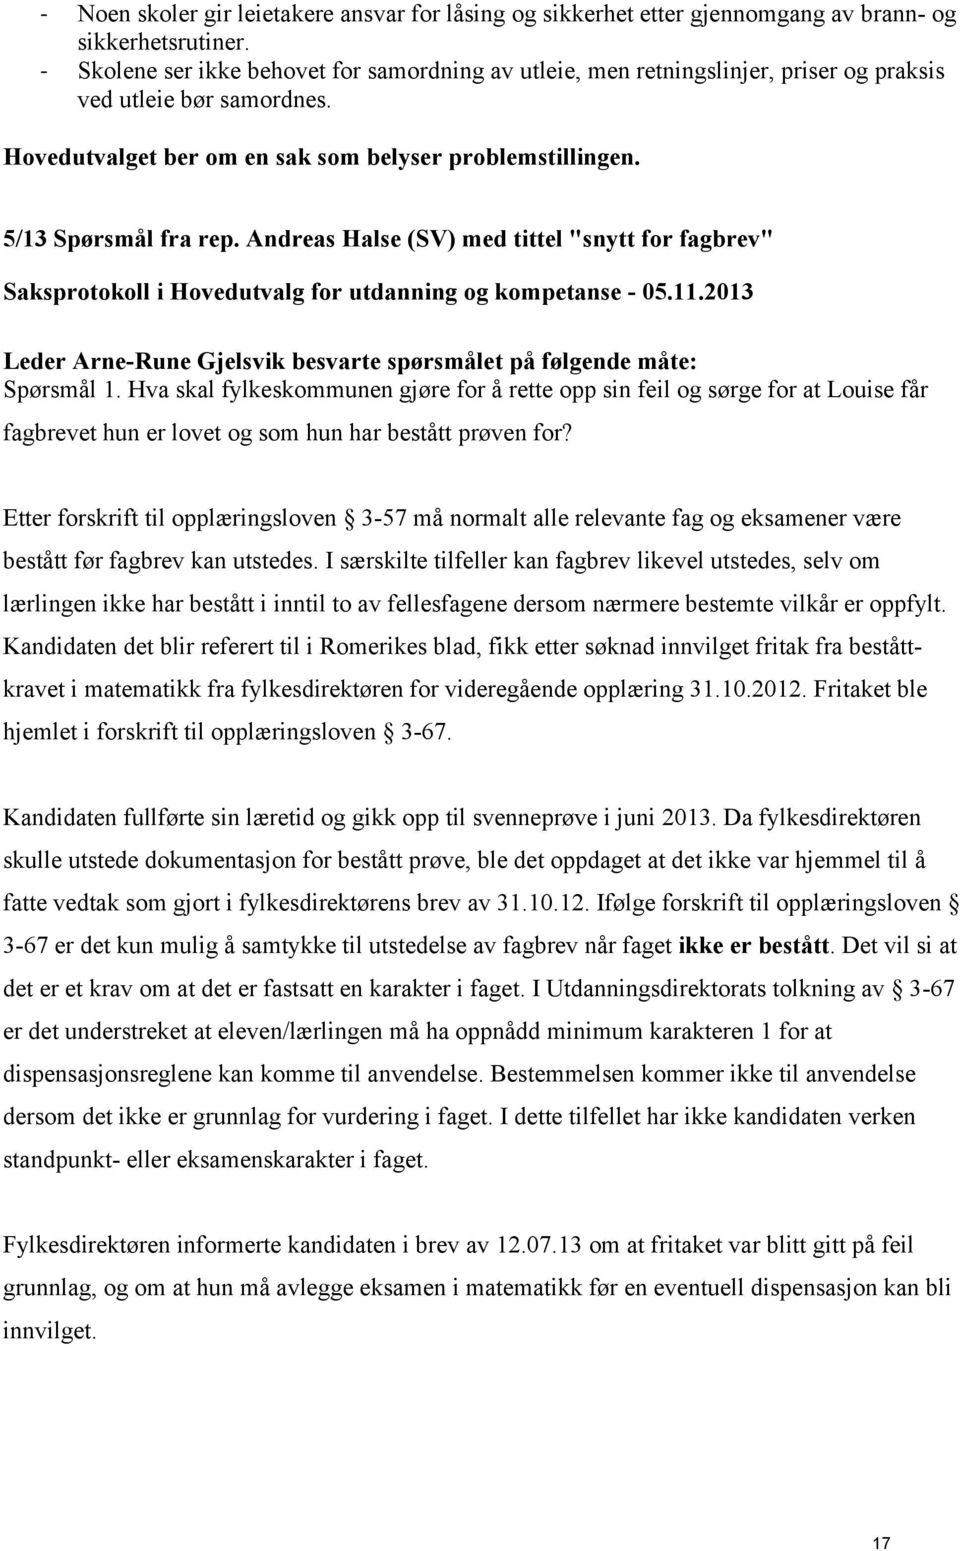 Andreas Halse (SV) med tittel "snytt for fagbrev" Leder Arne-Rune Gjelsvik besvarte spørsmålet på følgende måte: Spørsmål 1.